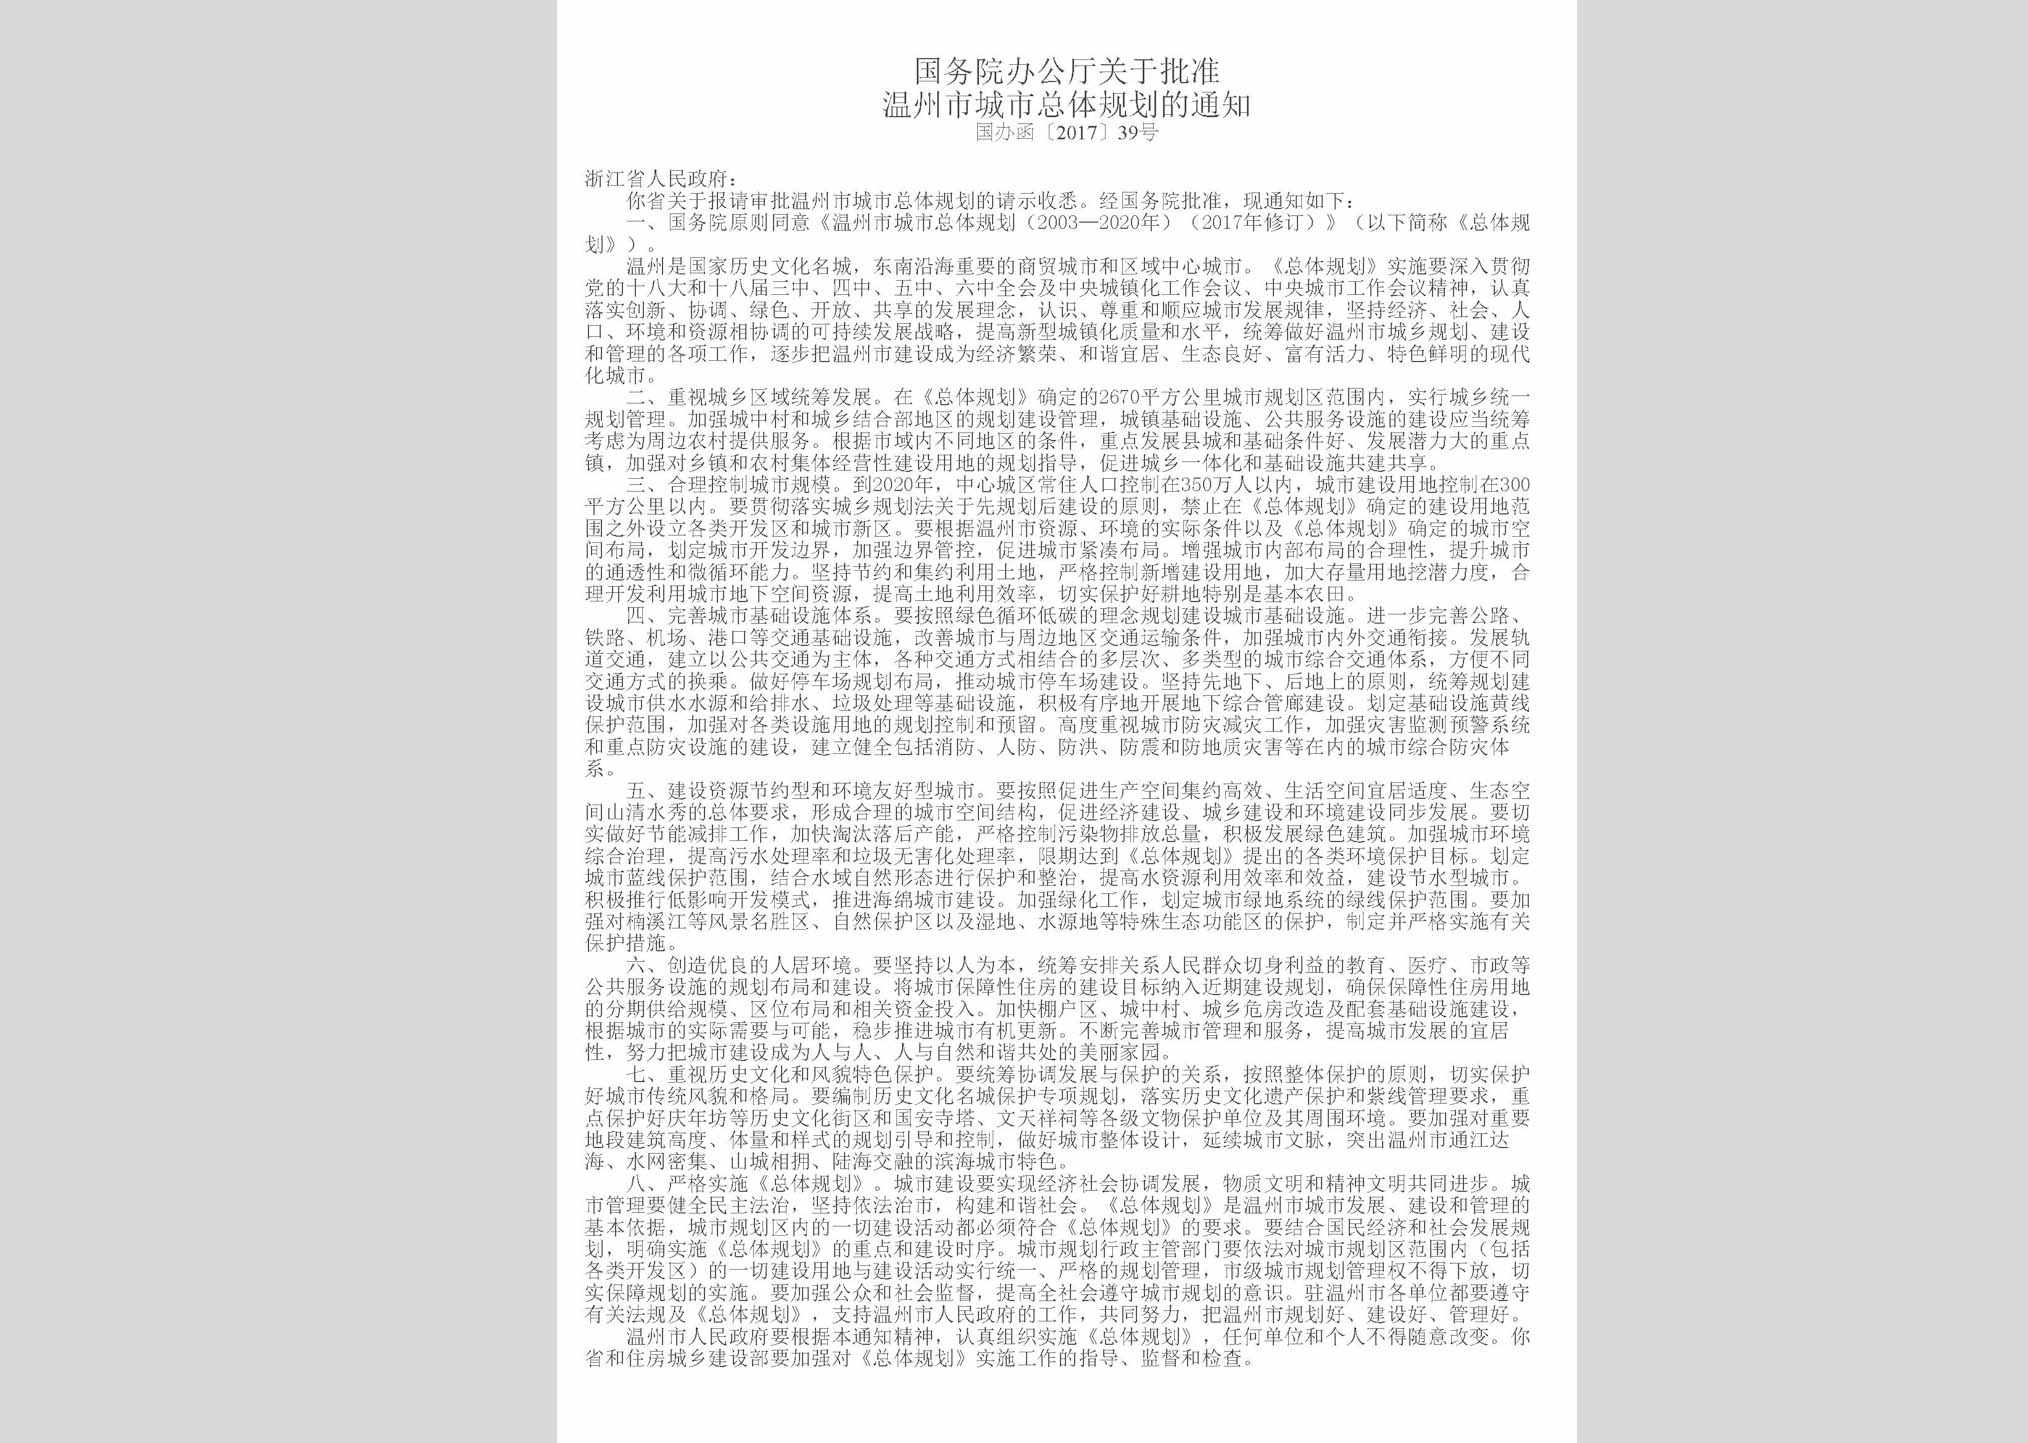 国办函[2017]39号：国务院办公厅关于批准温州市城市总体规划的通知